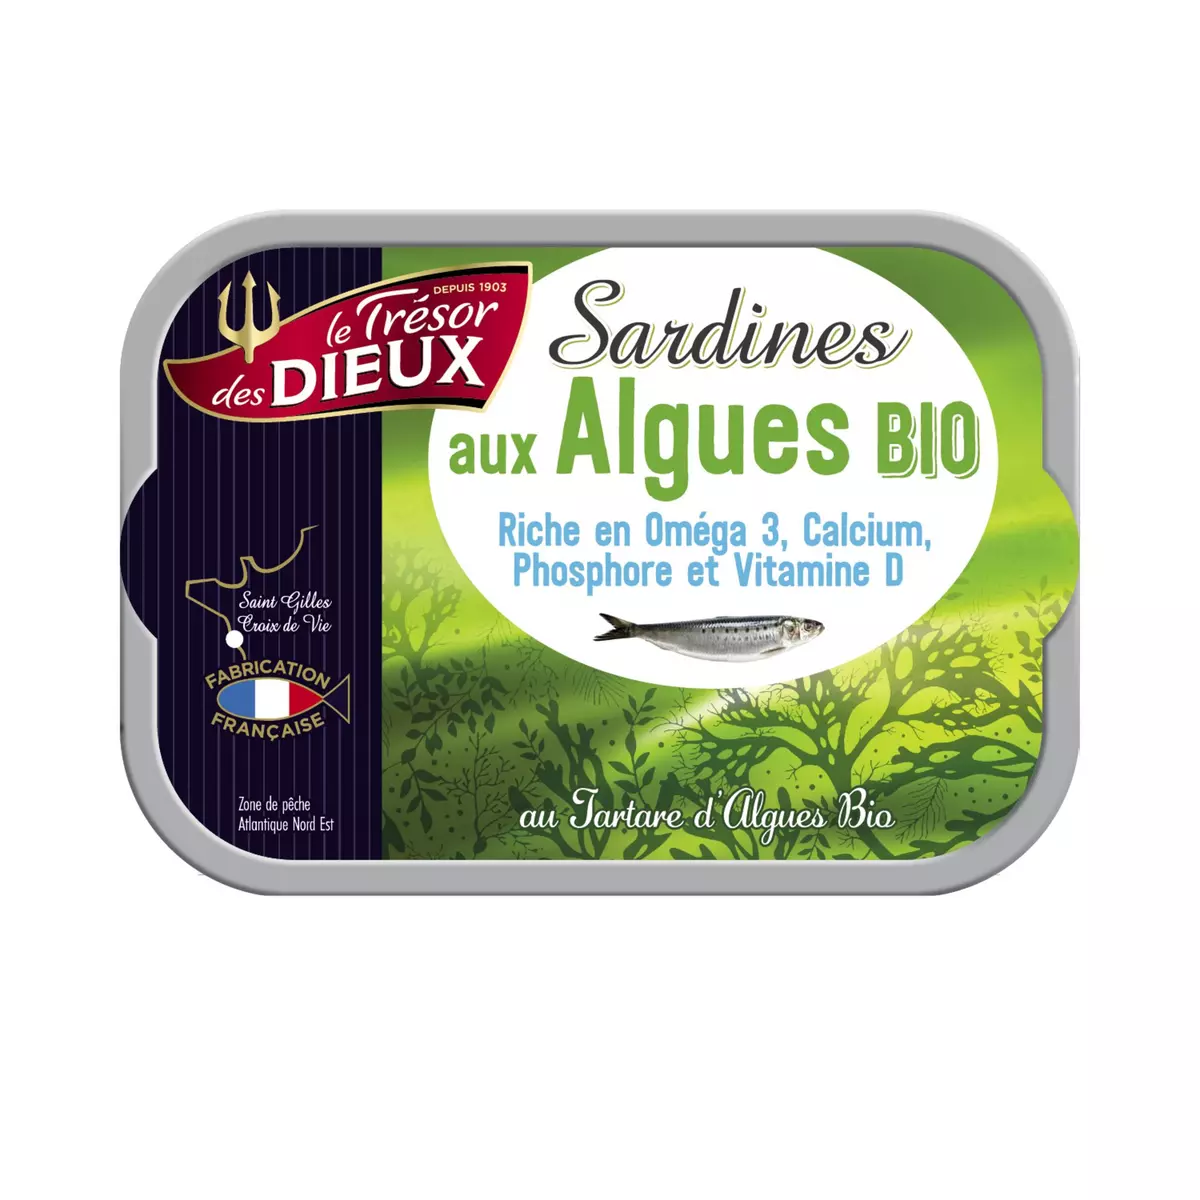 LE TRESOR DES DIEUX Sardines au tartare d'algues bio fabrication française 115g